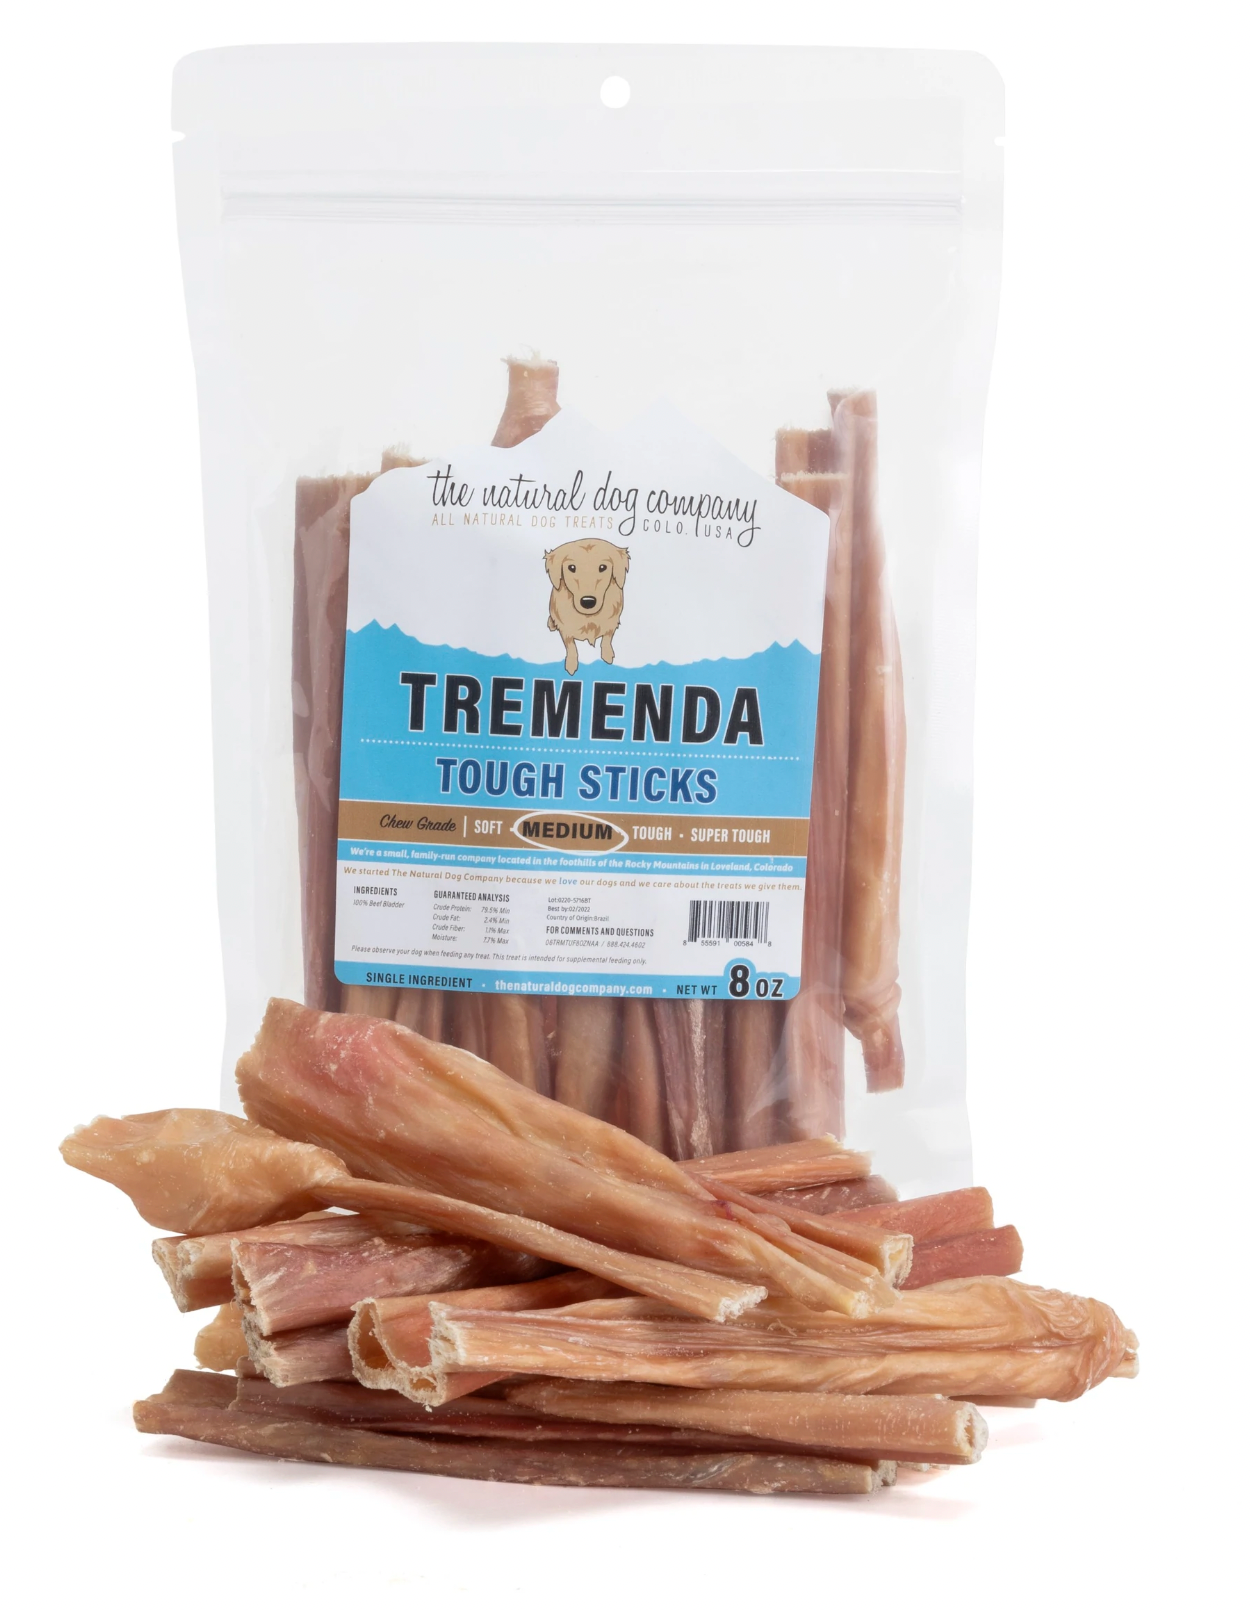 Tuesday's Natural Dog Company 6" Tremenda TOUGH Sticks - 8 oz